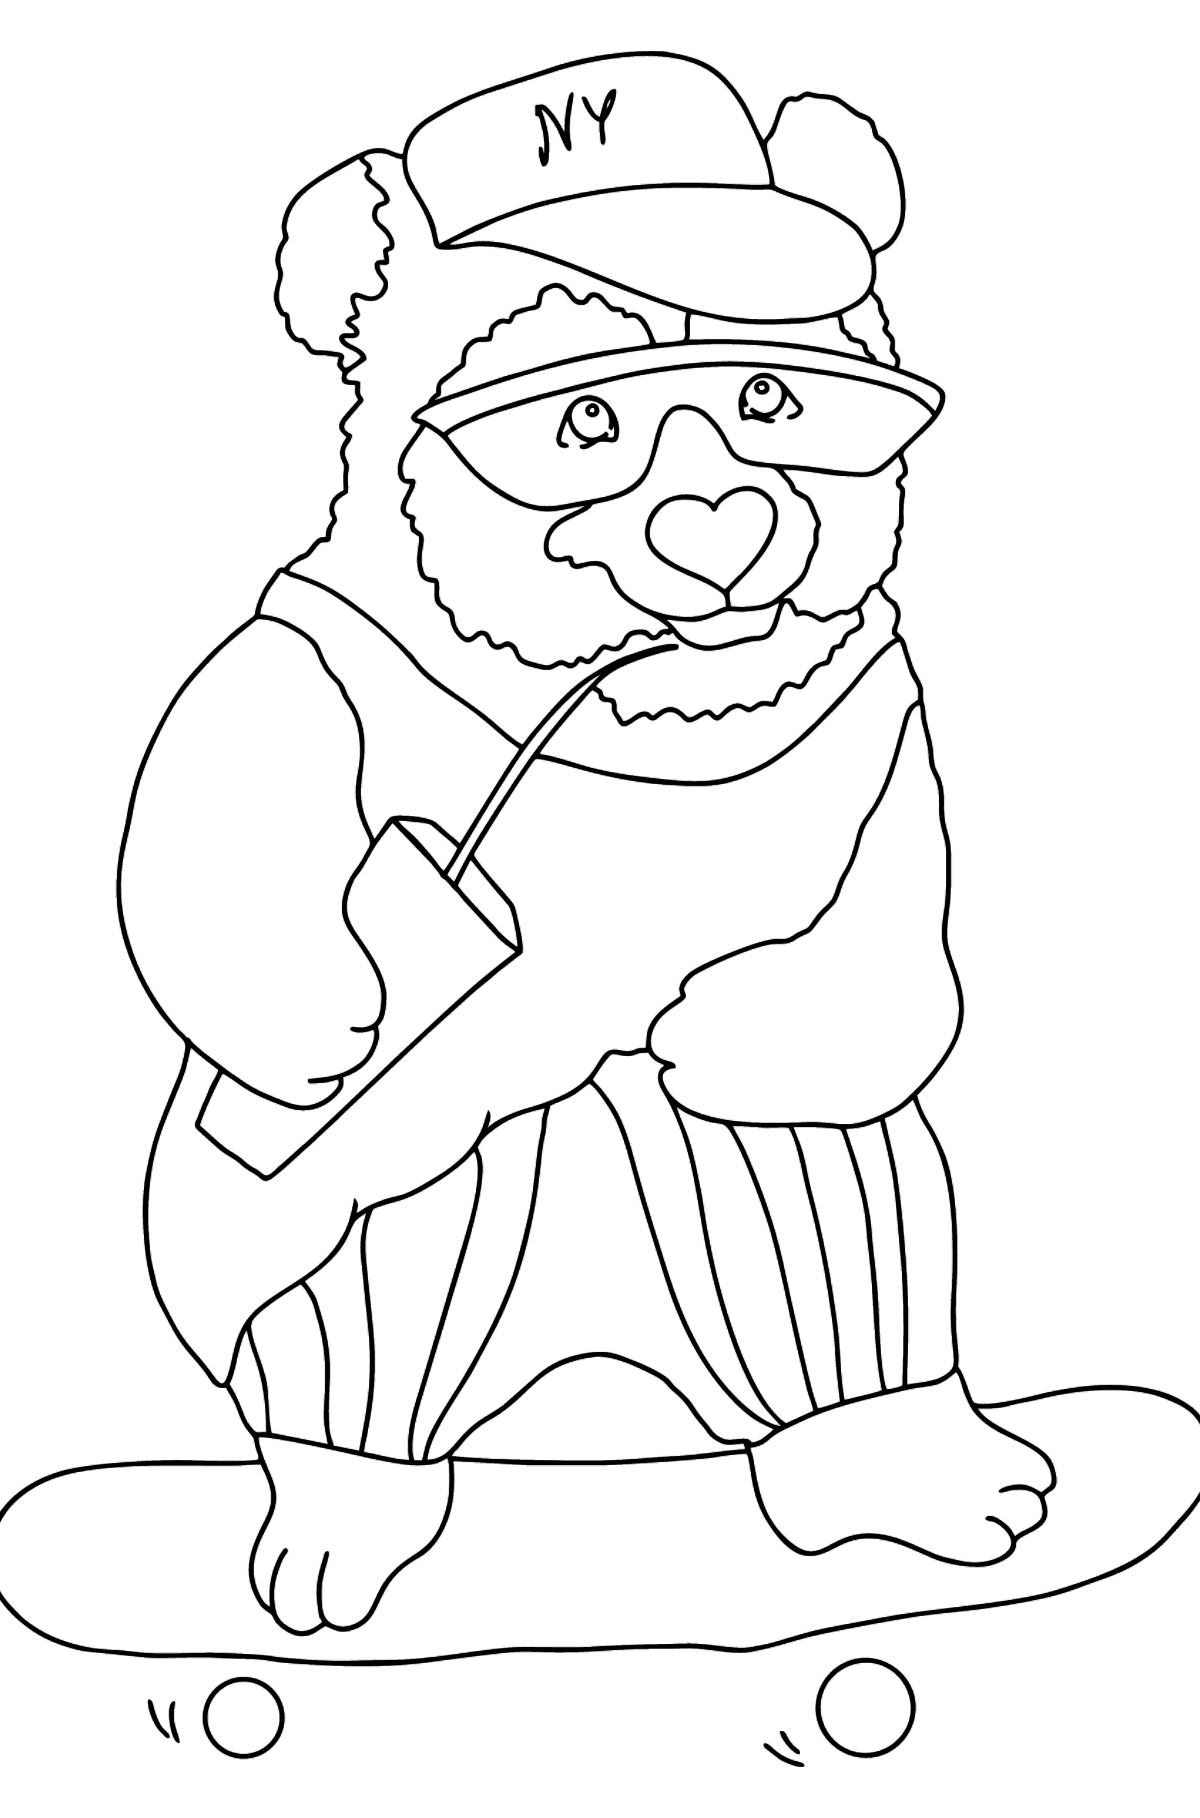 Dibujo de Panda Divertido (Difícil) para colorear - Dibujos para Colorear para Niños